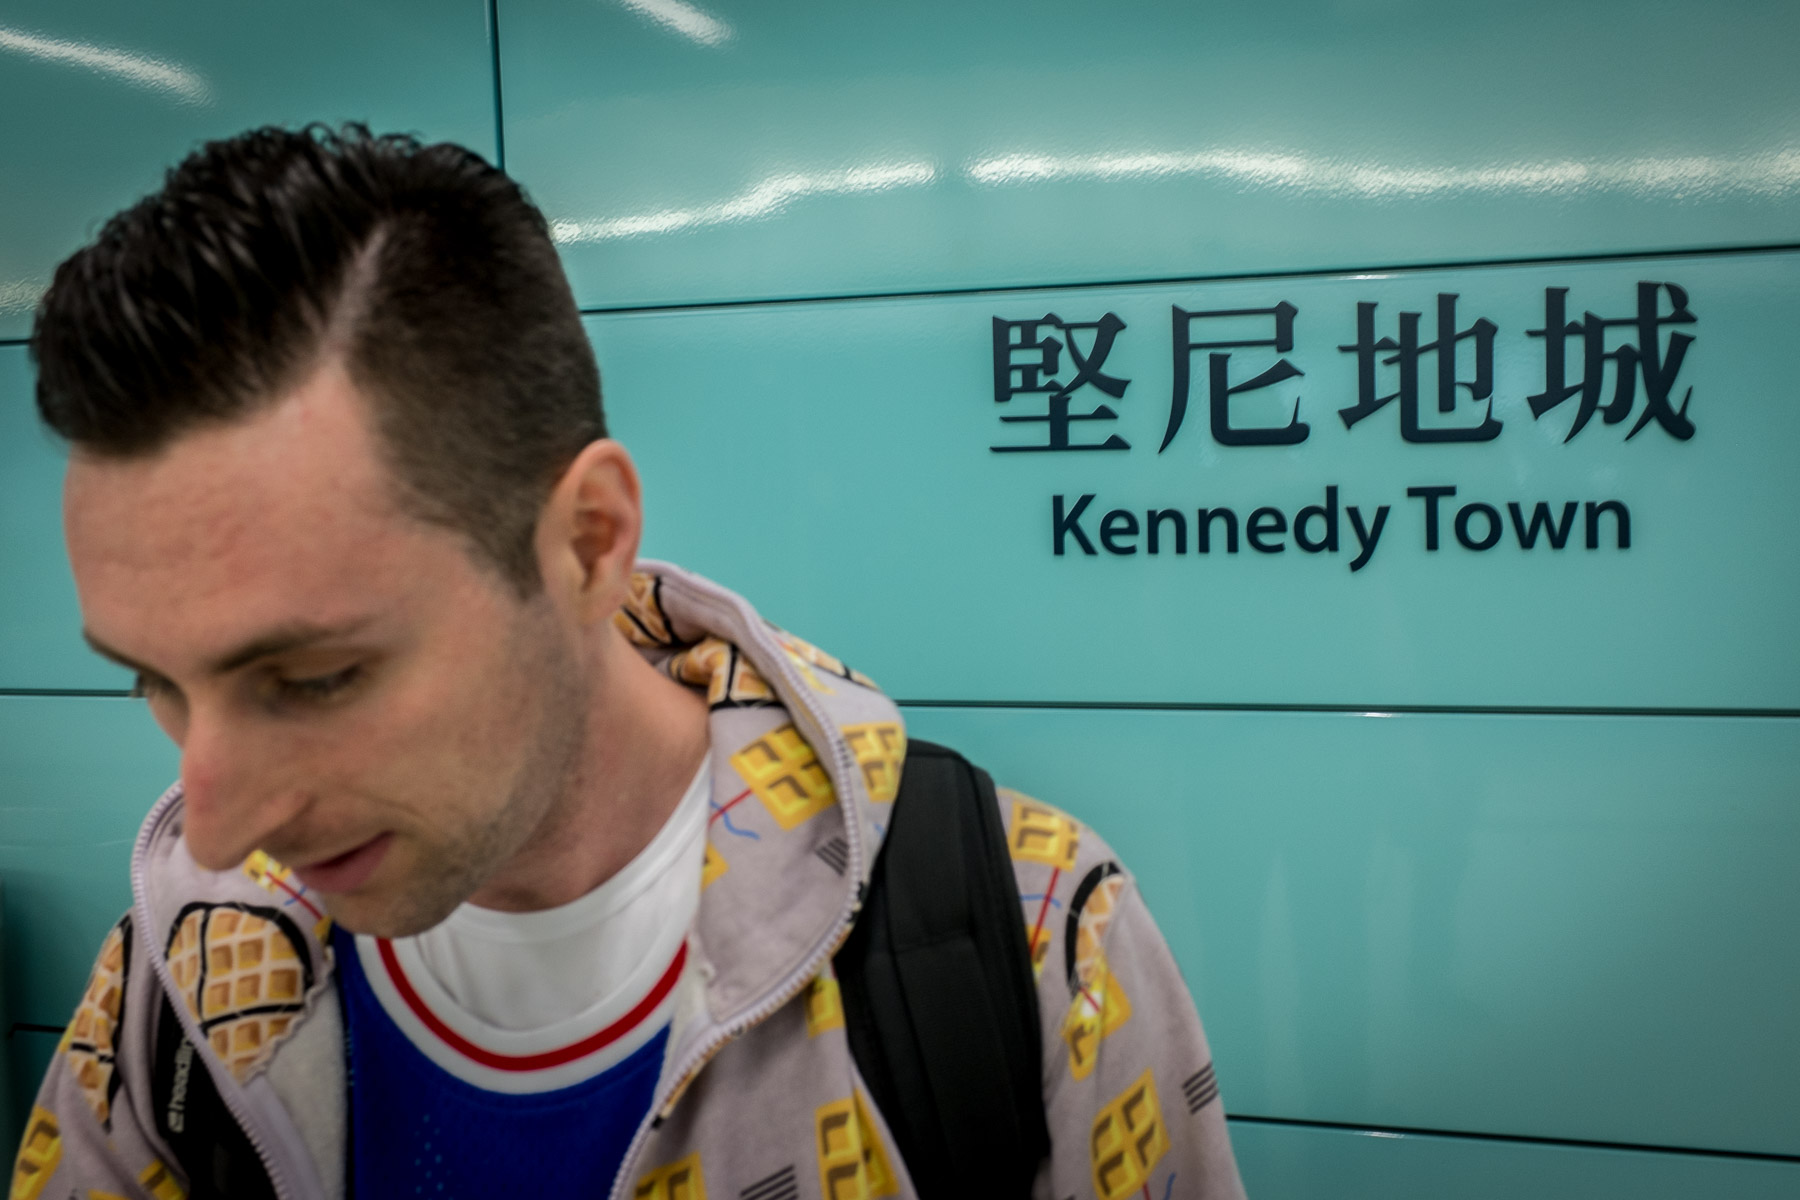 Kennedy Town MTR